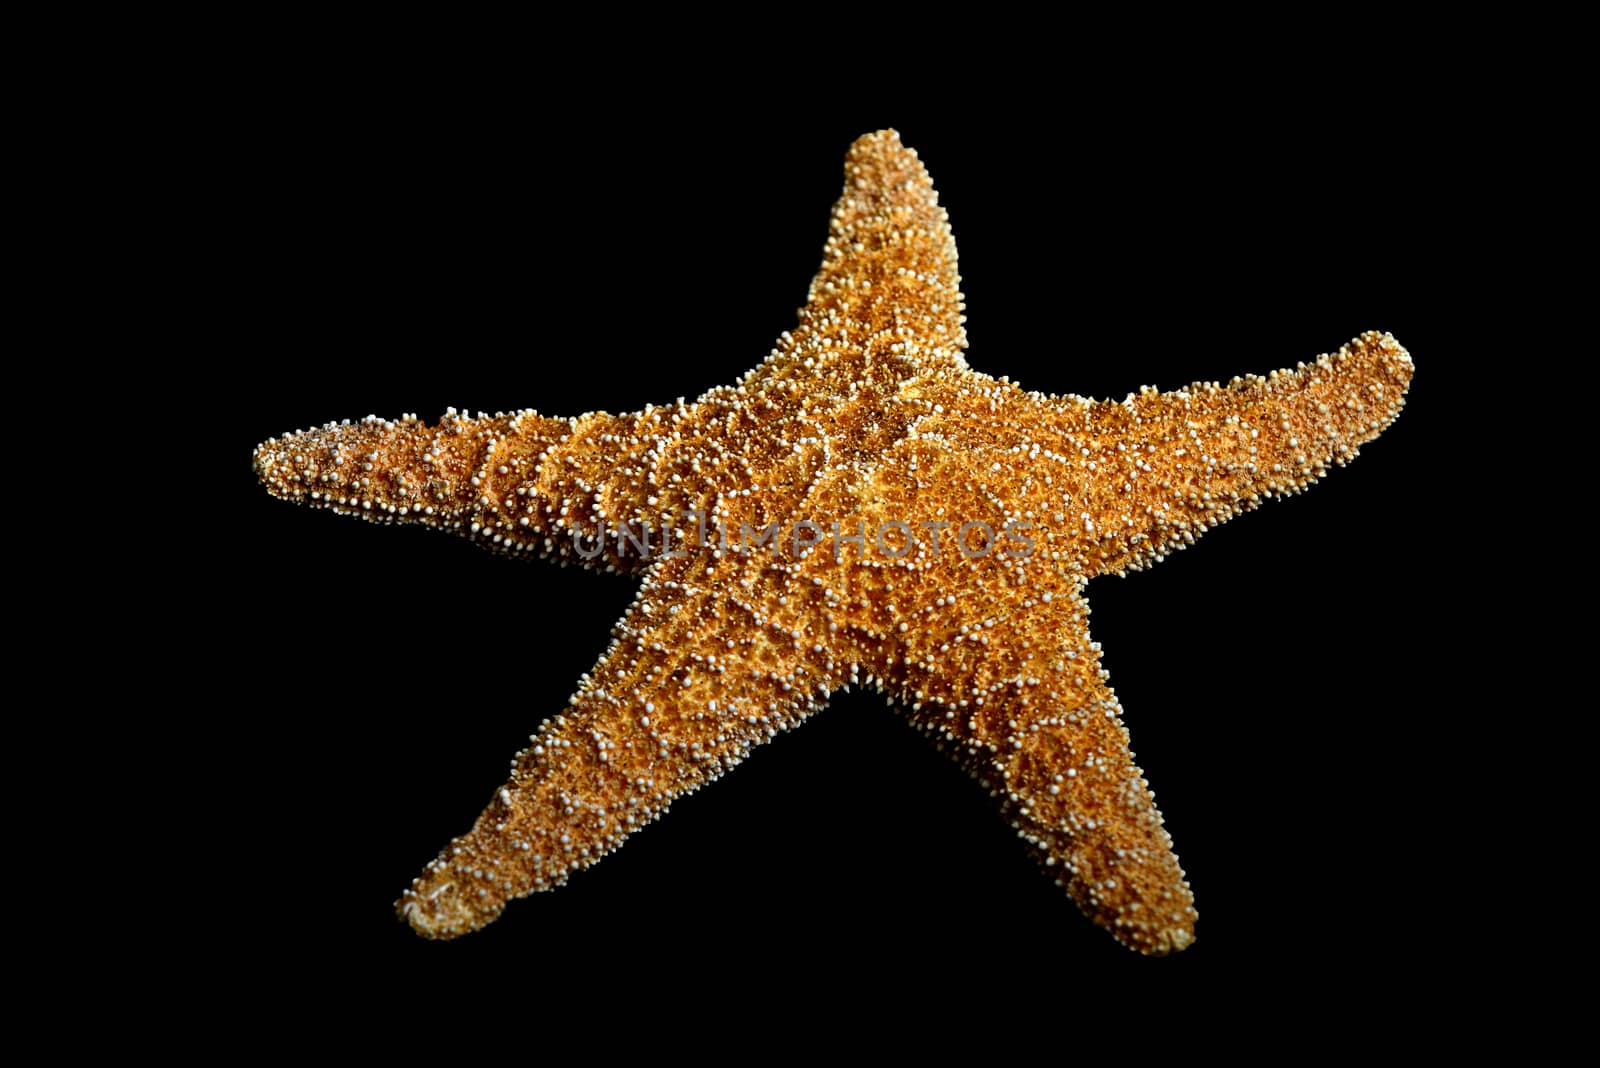 Echinoderm or starfish on black